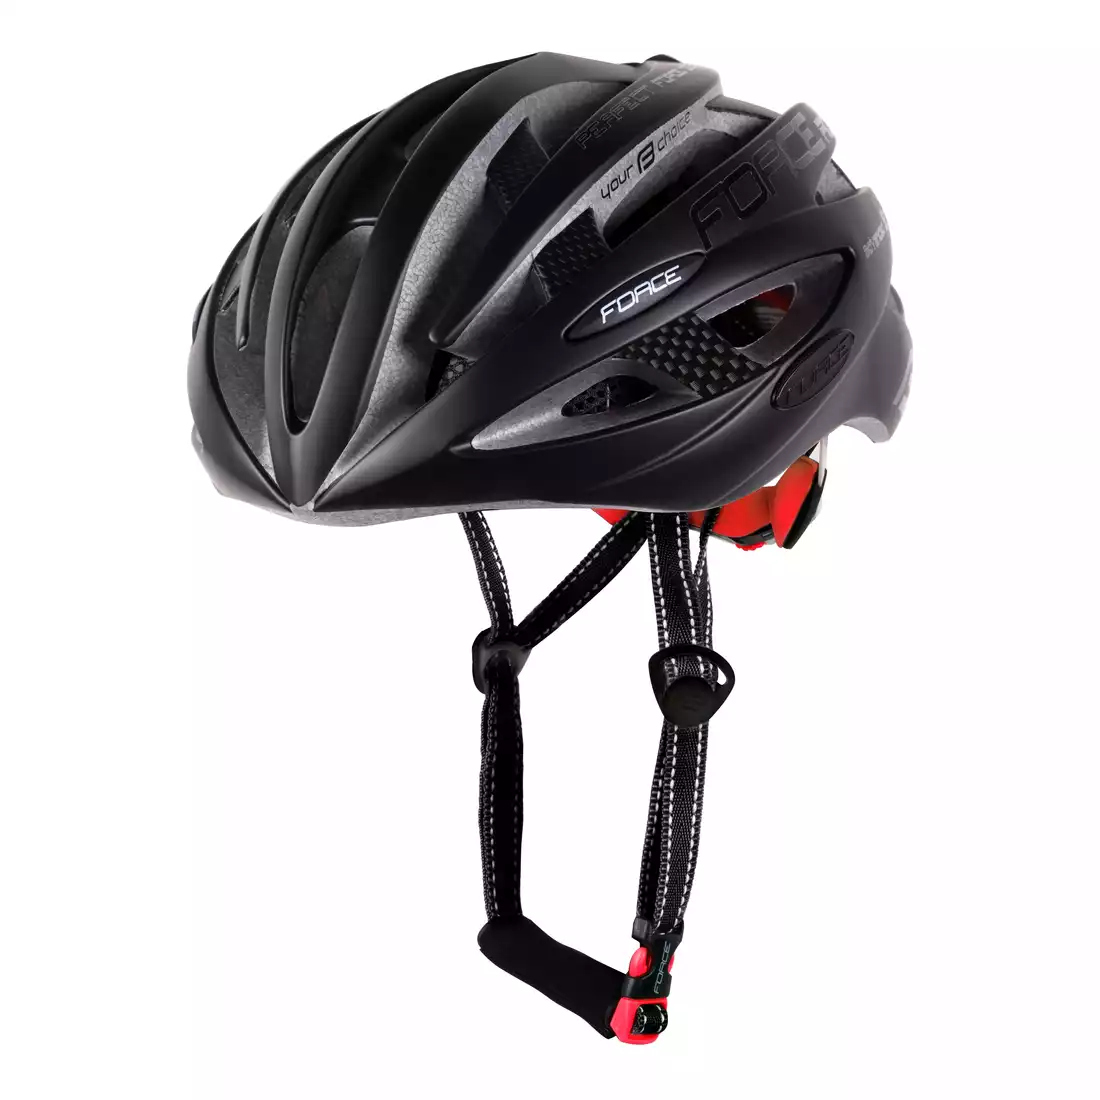 FORCE ROAD bicycle helmet, black mat